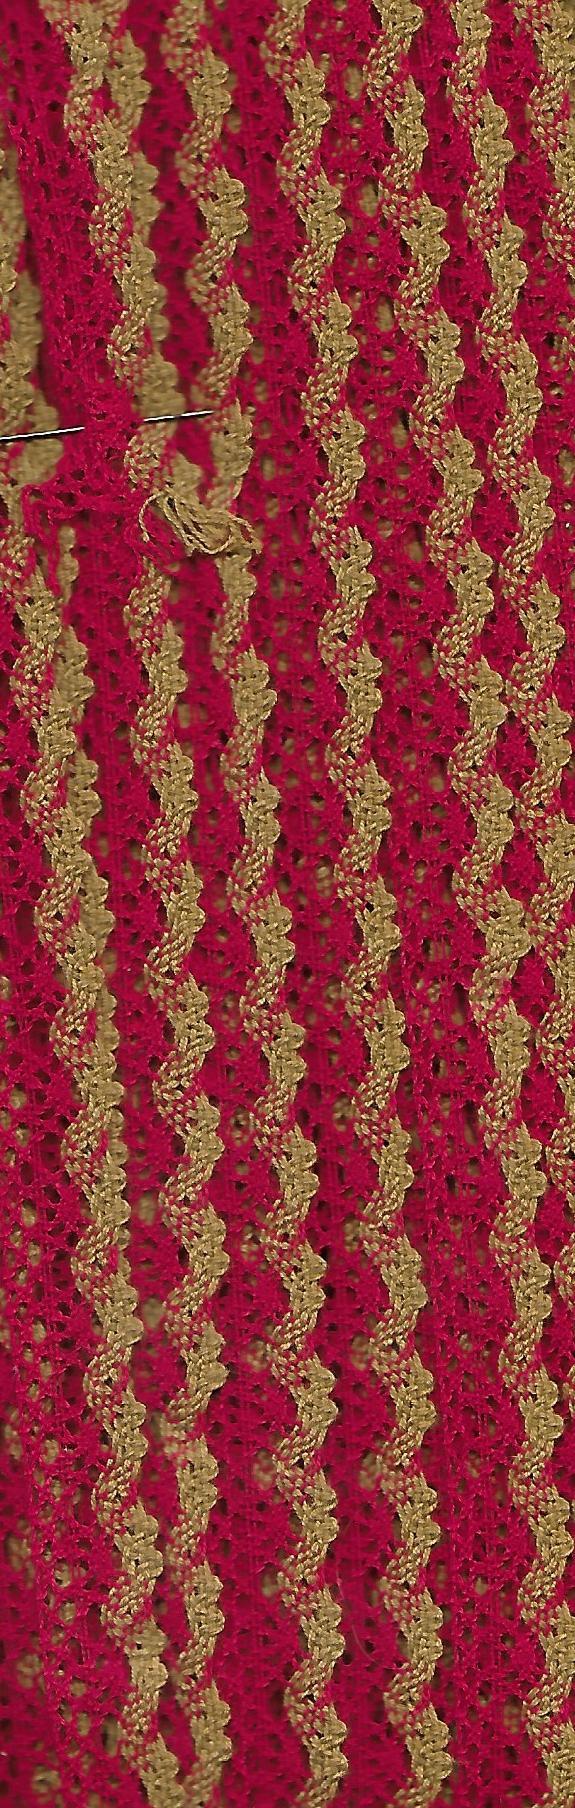 Baumwolle Spitzenband rot mit okerfarbiger Welle